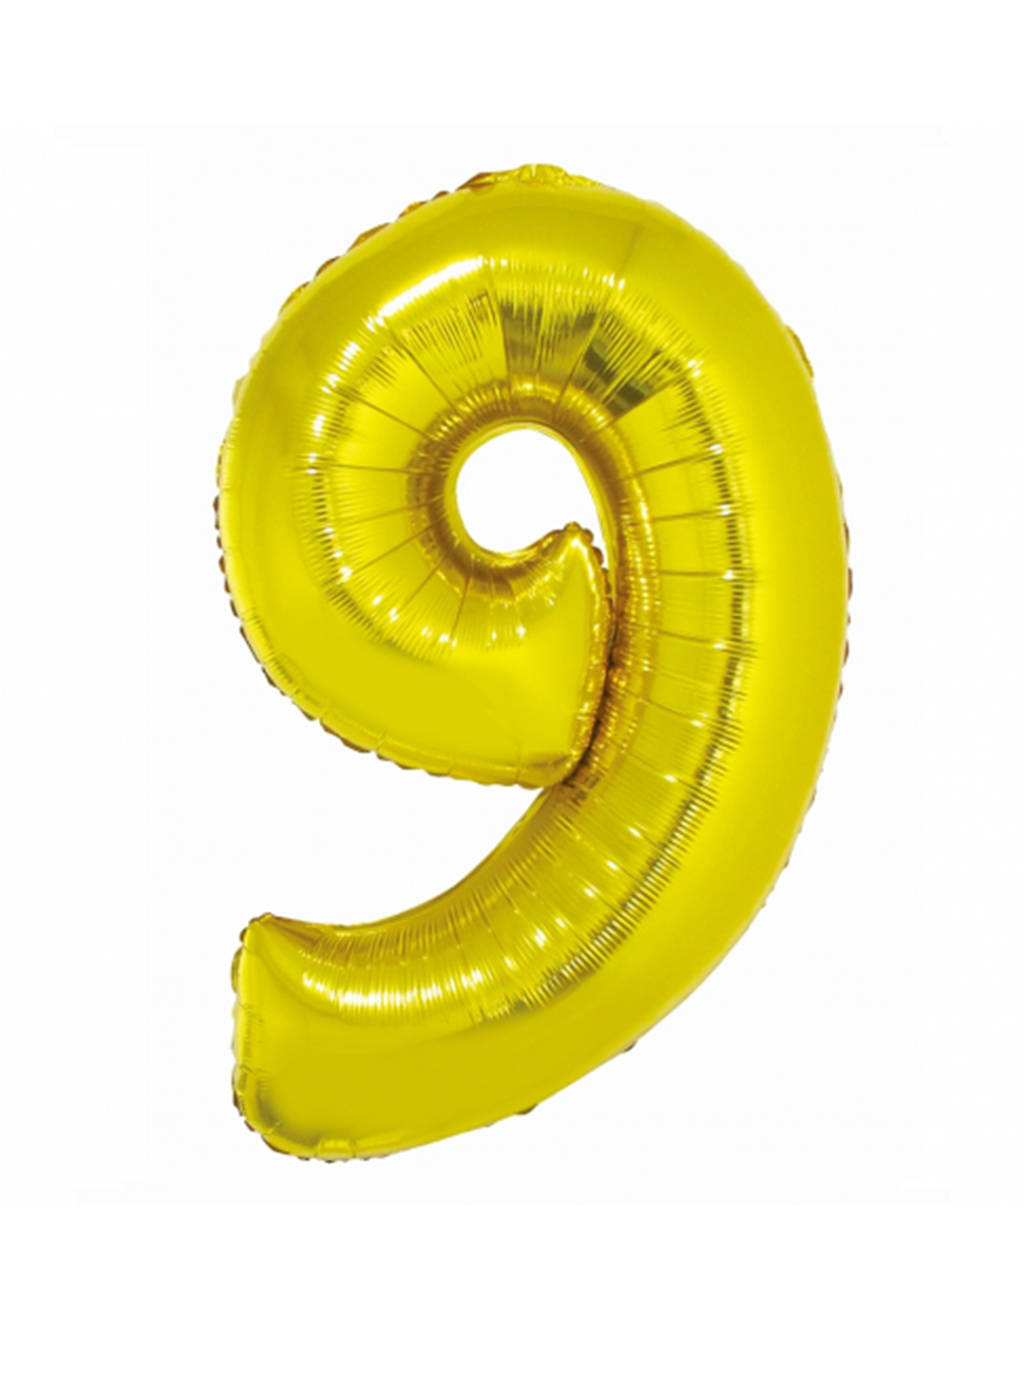 Złoty Balon Smart cyfra "9" -76cm